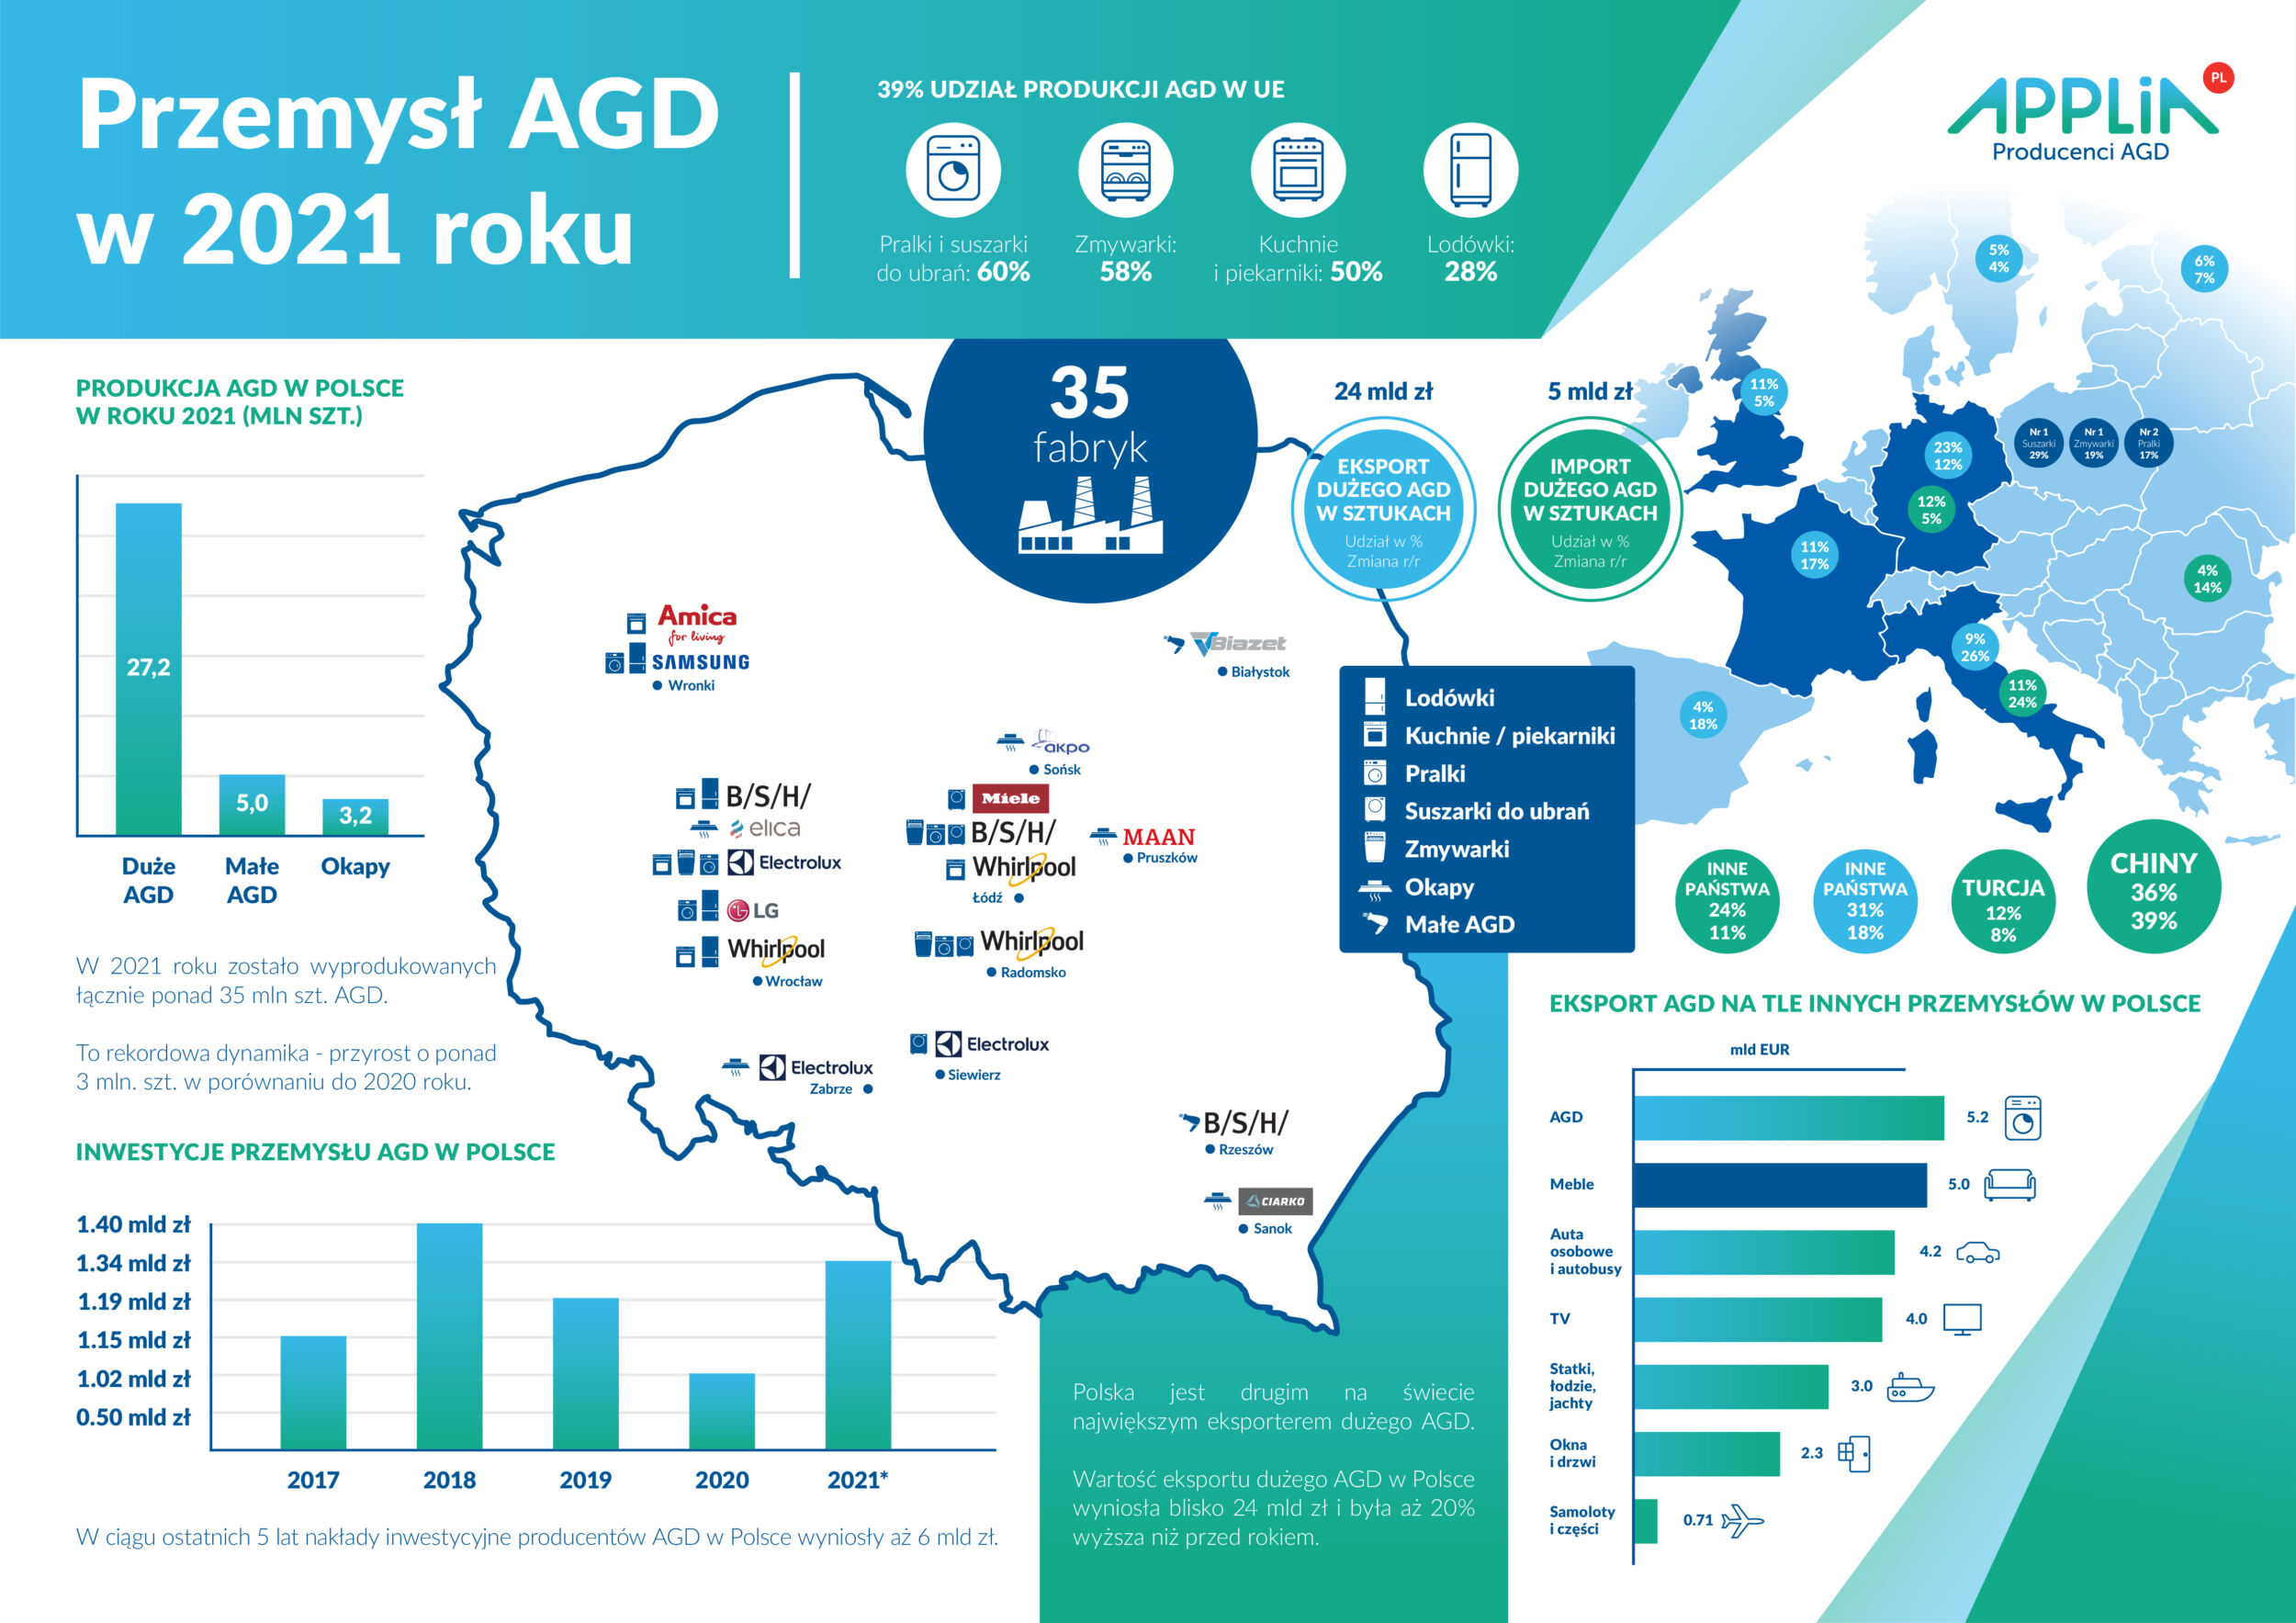 Rekordowy przyrost produkcji AGD w roku 2021 - infografika, przemysł AGD w 2021